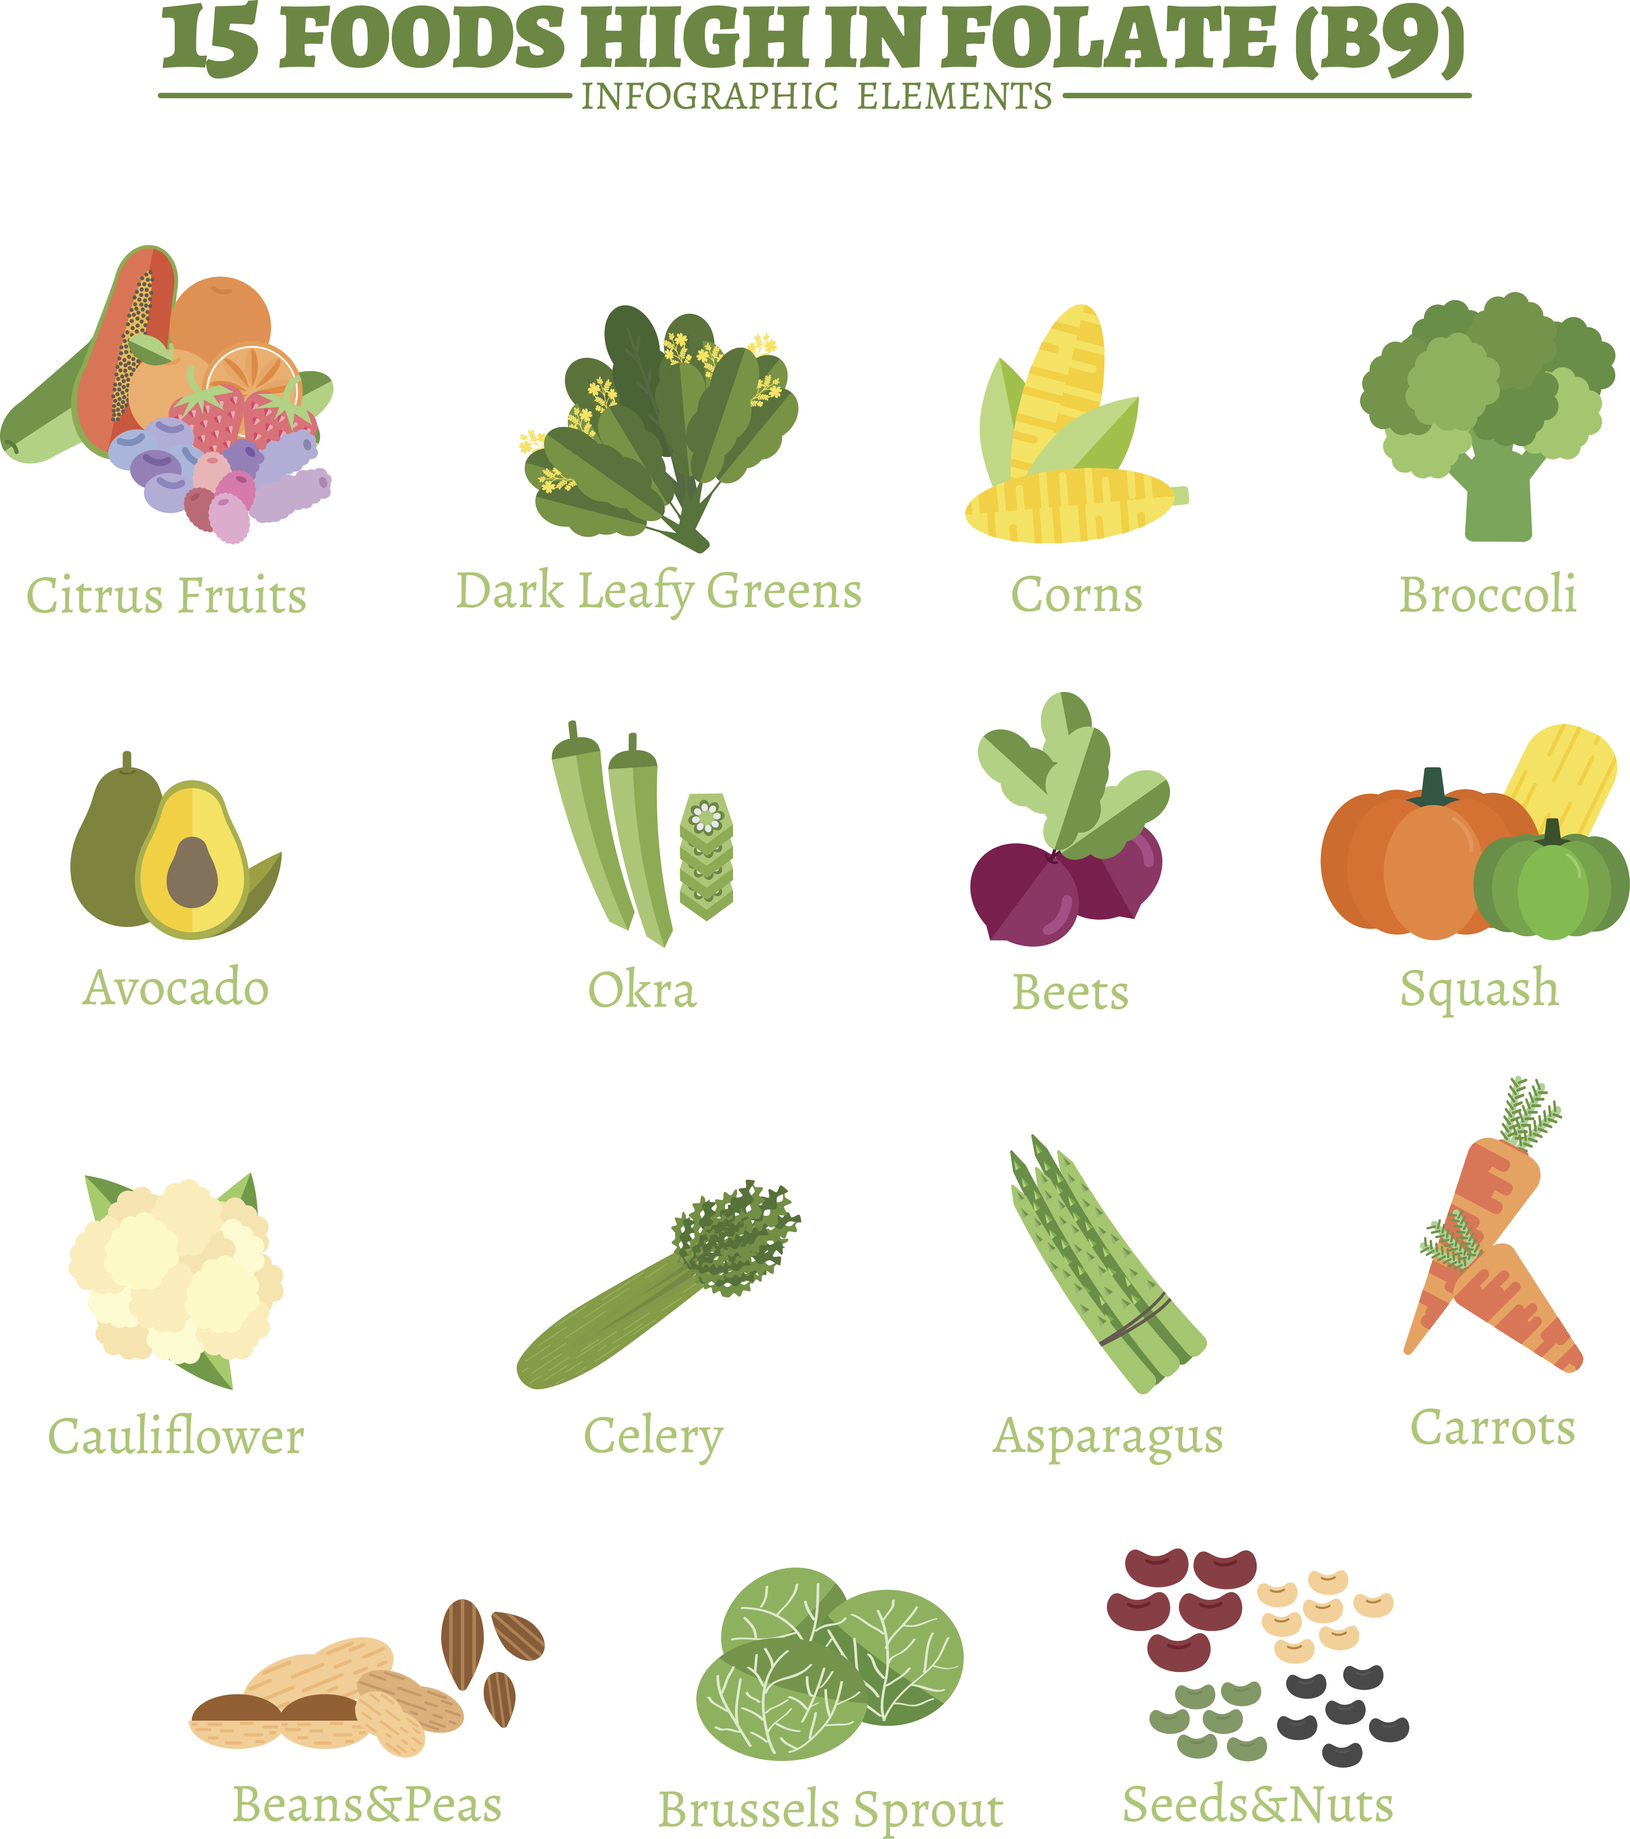 Wichtige Quellen für Vitamin B9 sind Zitrusfrüchte, dunkelgrünes Blattgemüse, Mais, Brokkoli, Avocado, Okra, Rote Bete, Rote-Bete-Saft, Blumenkohl, Sellerie, Spargel, Karotten, Bohnen und Erbsen, Rosenkohl, Samen und Nüsse. 